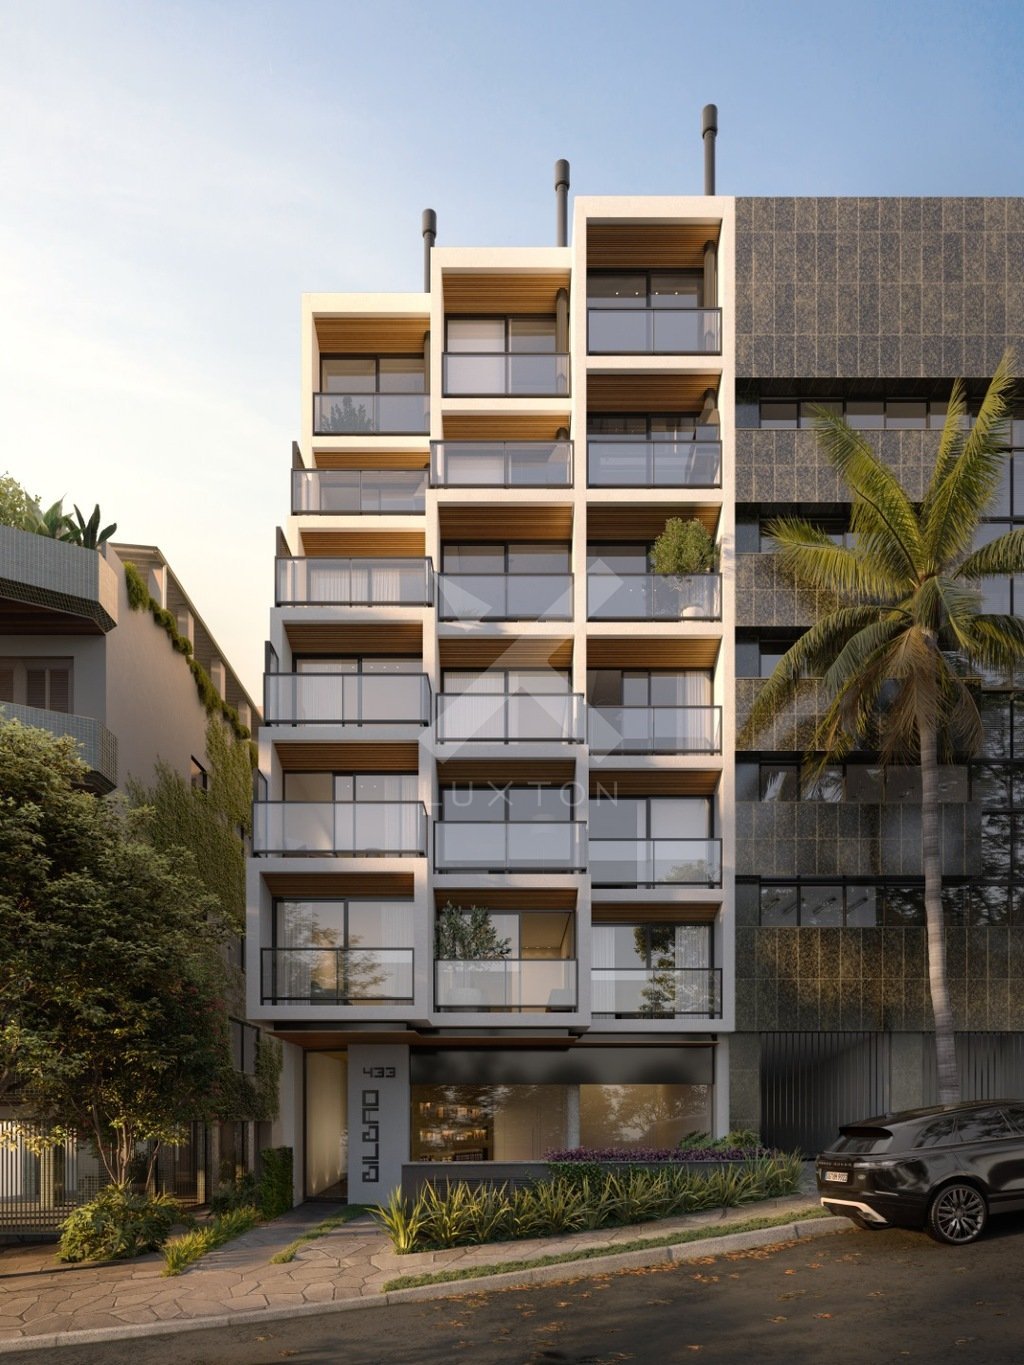 Apartamento com 82m², 1 dormitório, 1 suíte, no bairro Rio Branco em Porto Alegre para Comprar